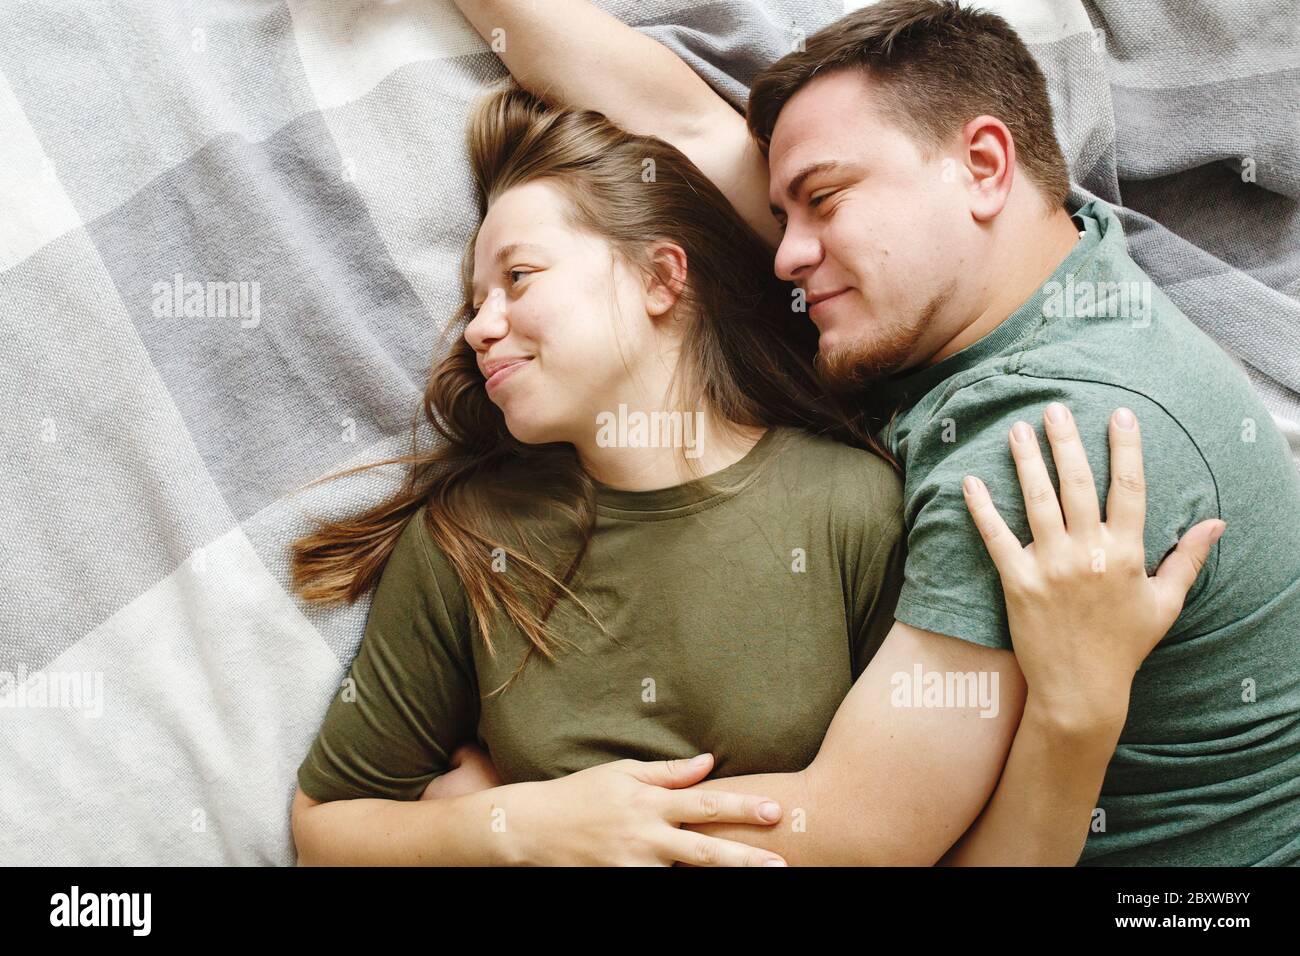 Porträt von liebevollen umarmenden Paar auf einem Bett zusammen liegen, bleiben zu Hause Konzept, Draufsicht. Junger Freund und Freundin, echte Menschen. Stockfoto